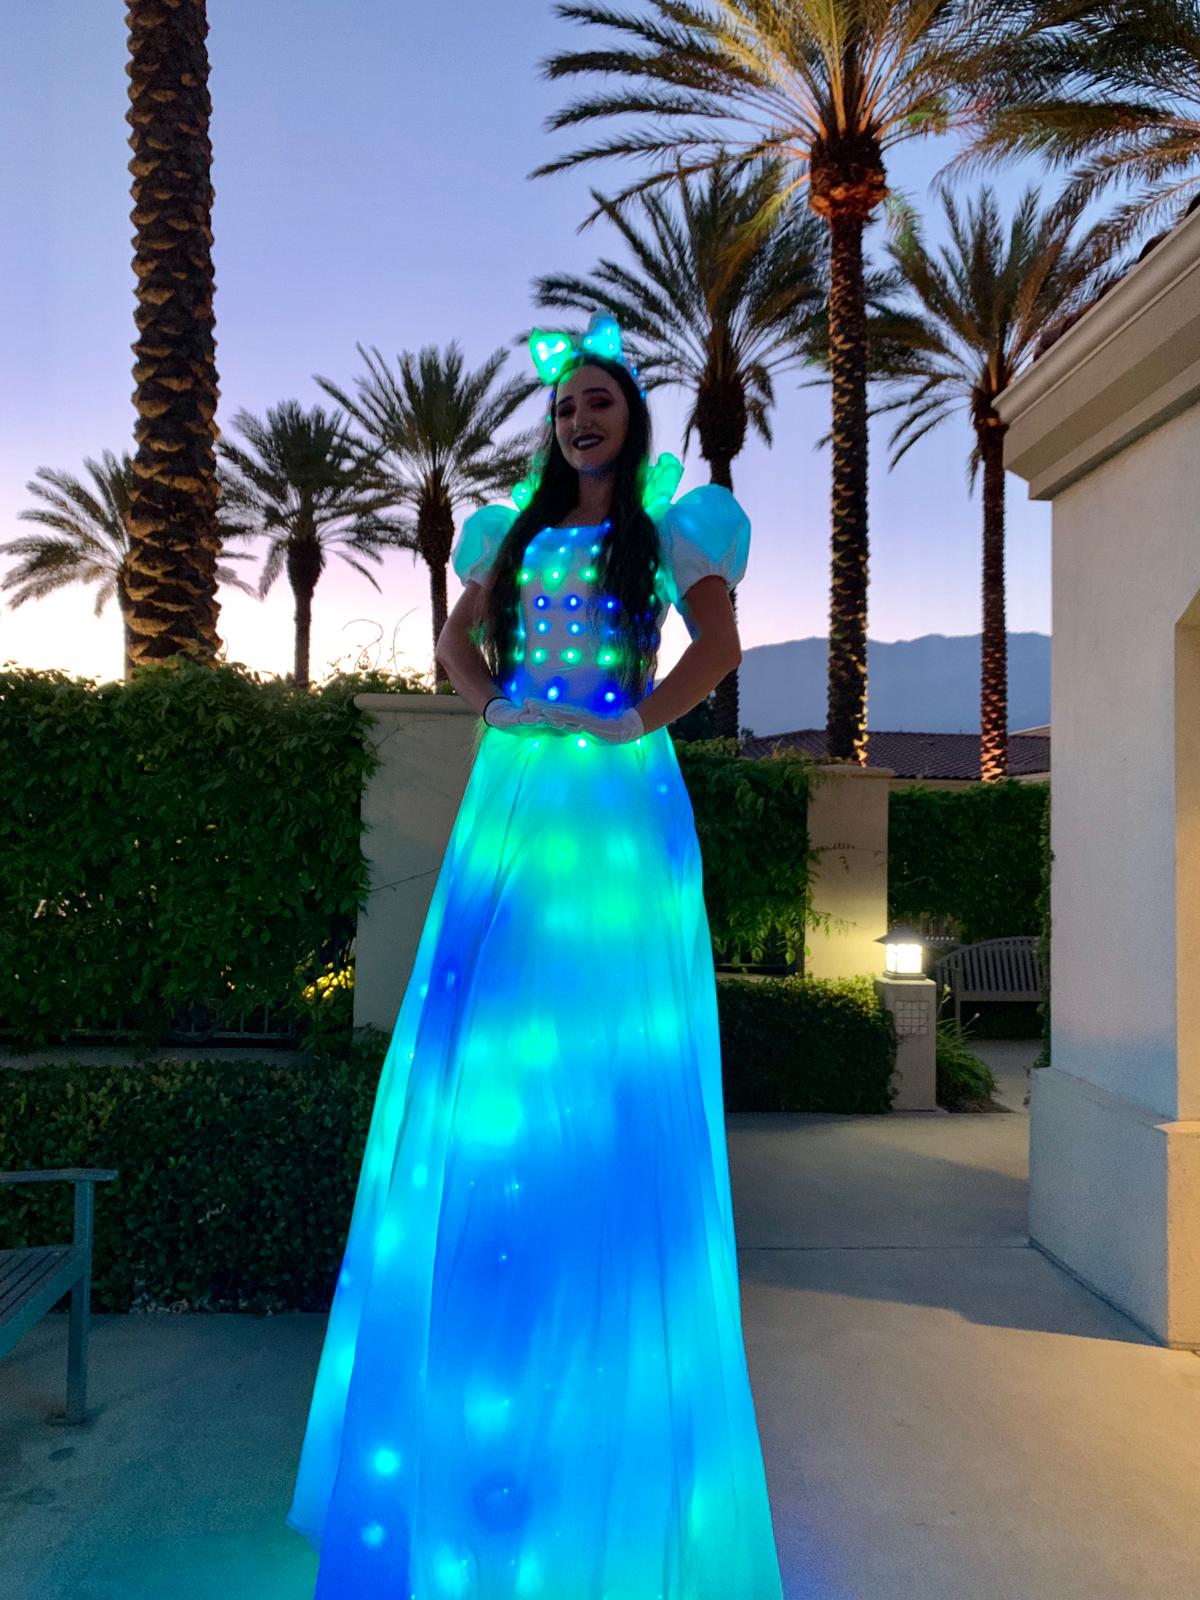 led light dress for stilts walker